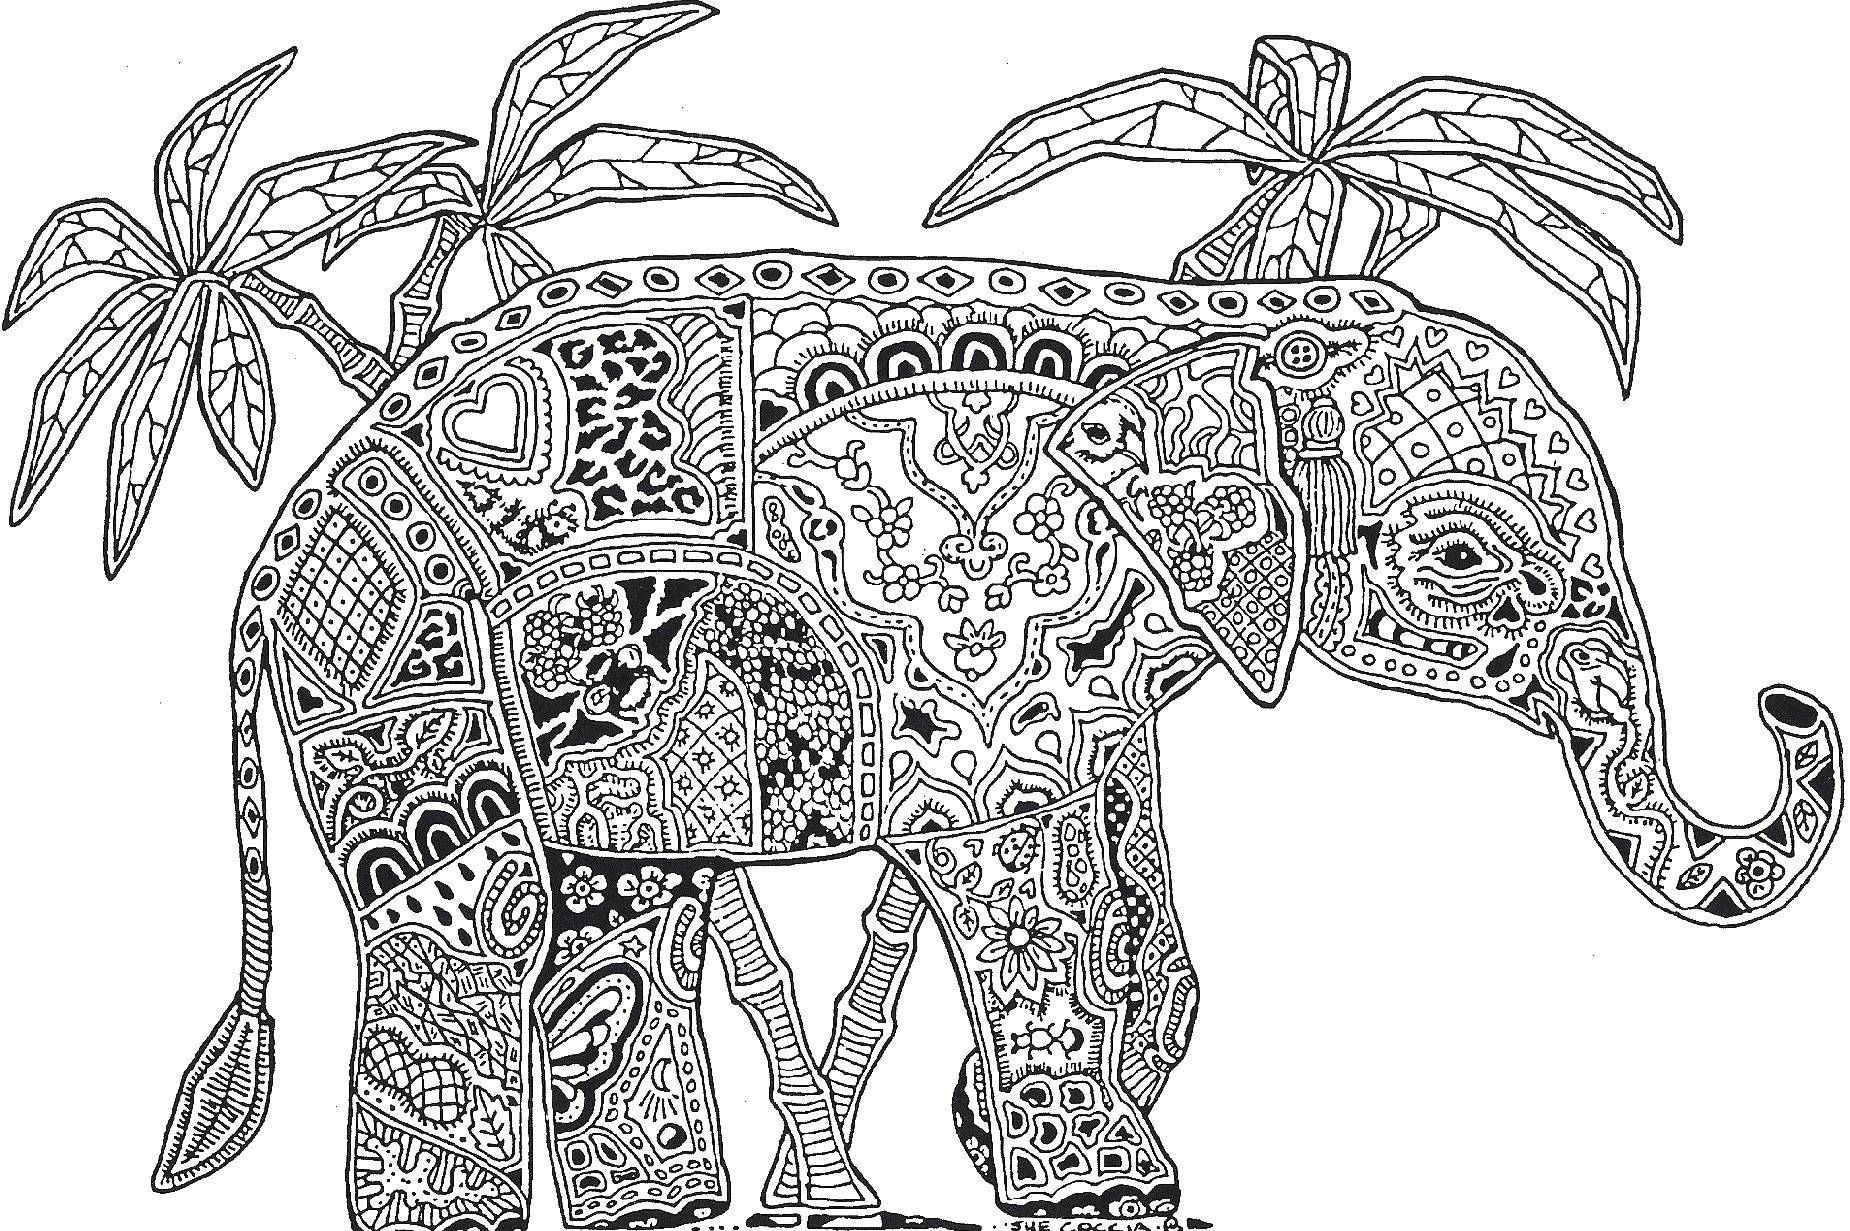 Название: Раскраска Слон, антисресс. Категория: Антистресс. Теги: узоры, фигуры, антистресс, слон.